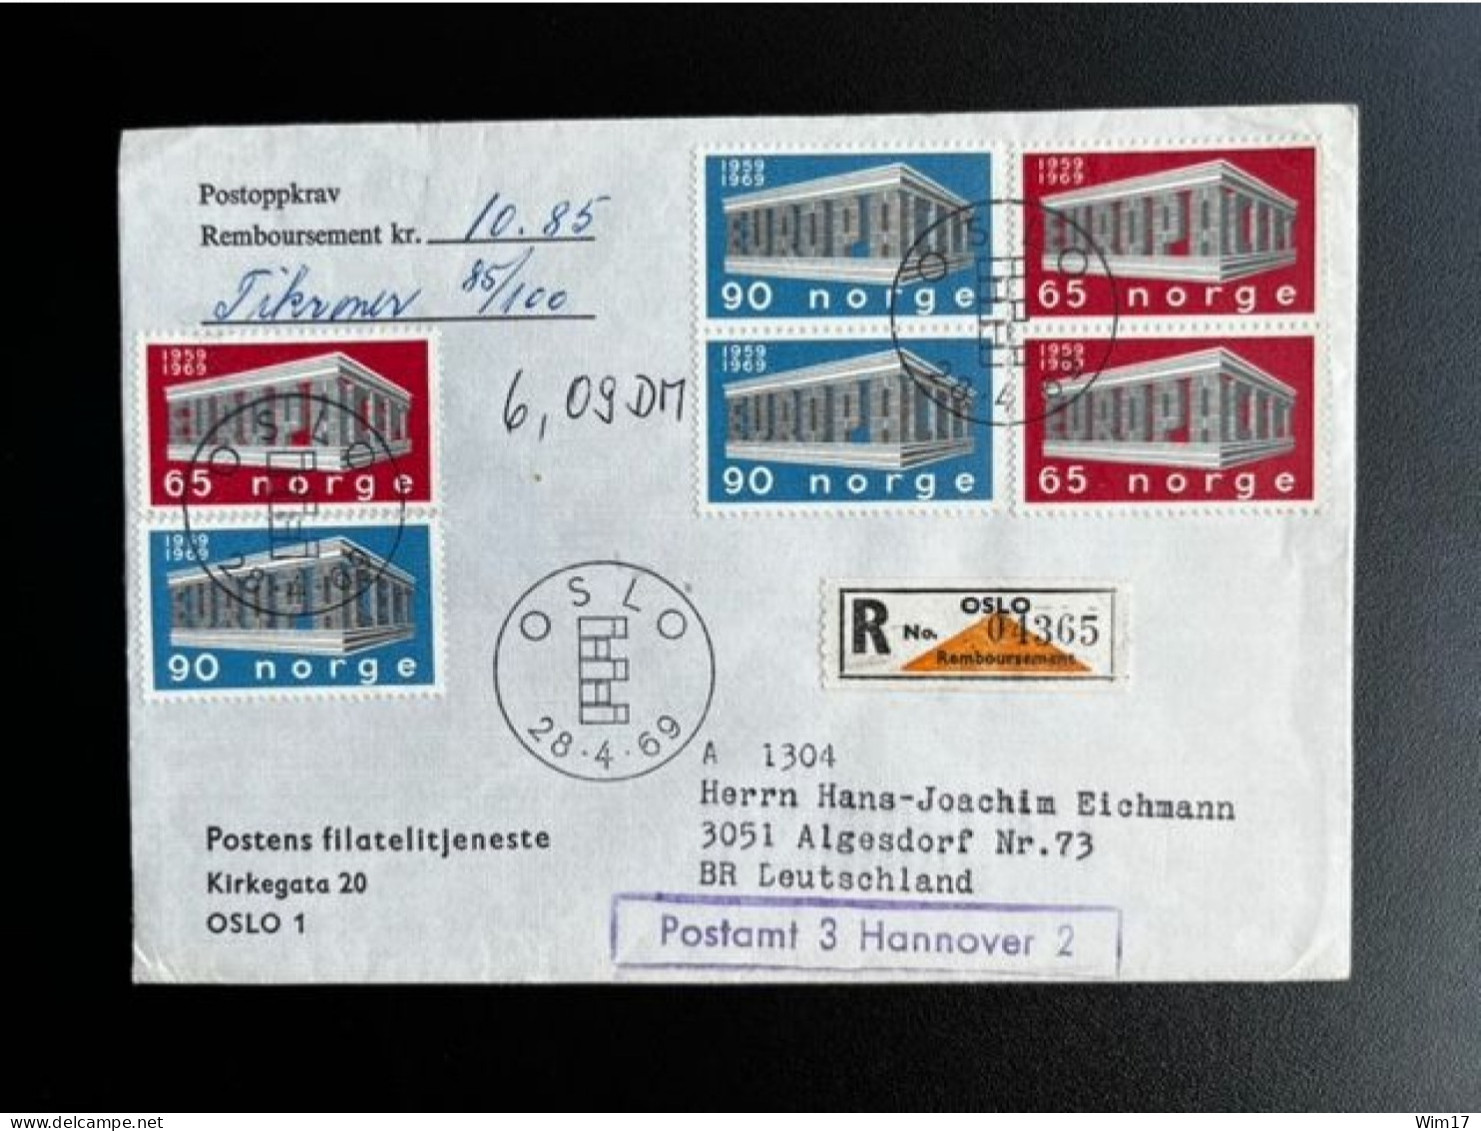 NORWAY NORGE 1969 REGISTERED POD LETTER OSLO TO ALGESDORF 28-04-1969 NOORWEGEN REMBOURSEMENT - Lettres & Documents